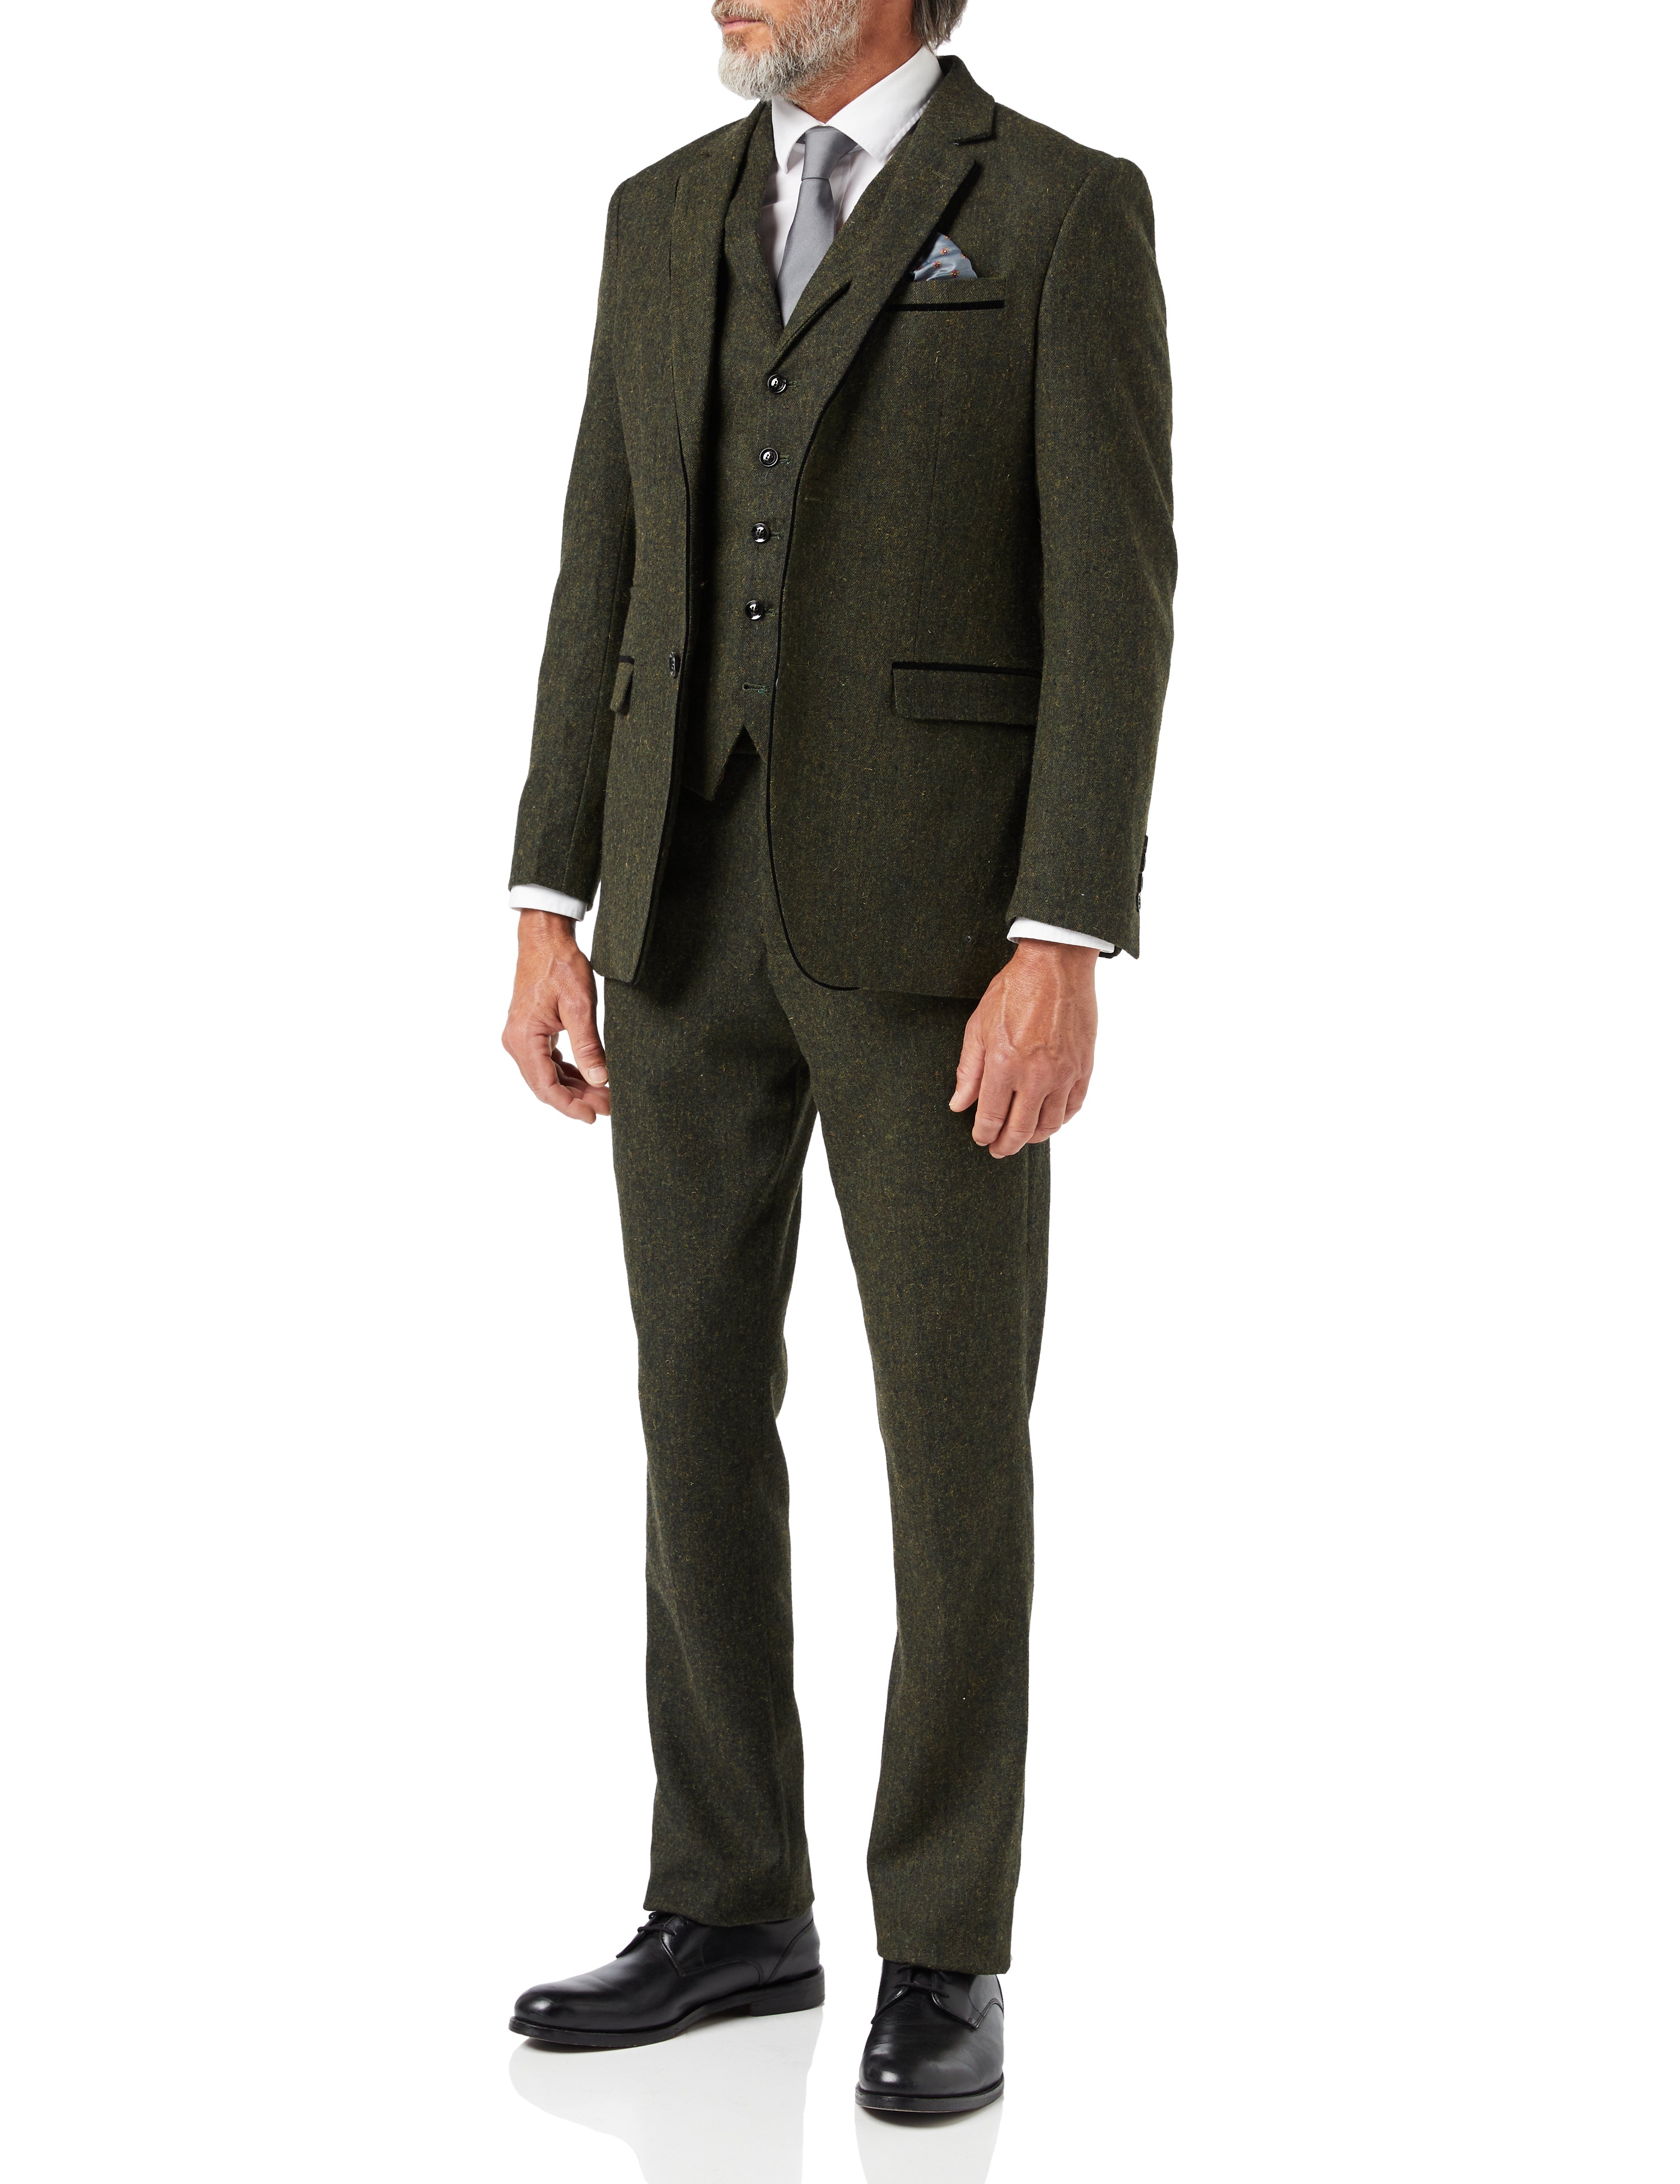 DANE - Green Tweed Suit for Men